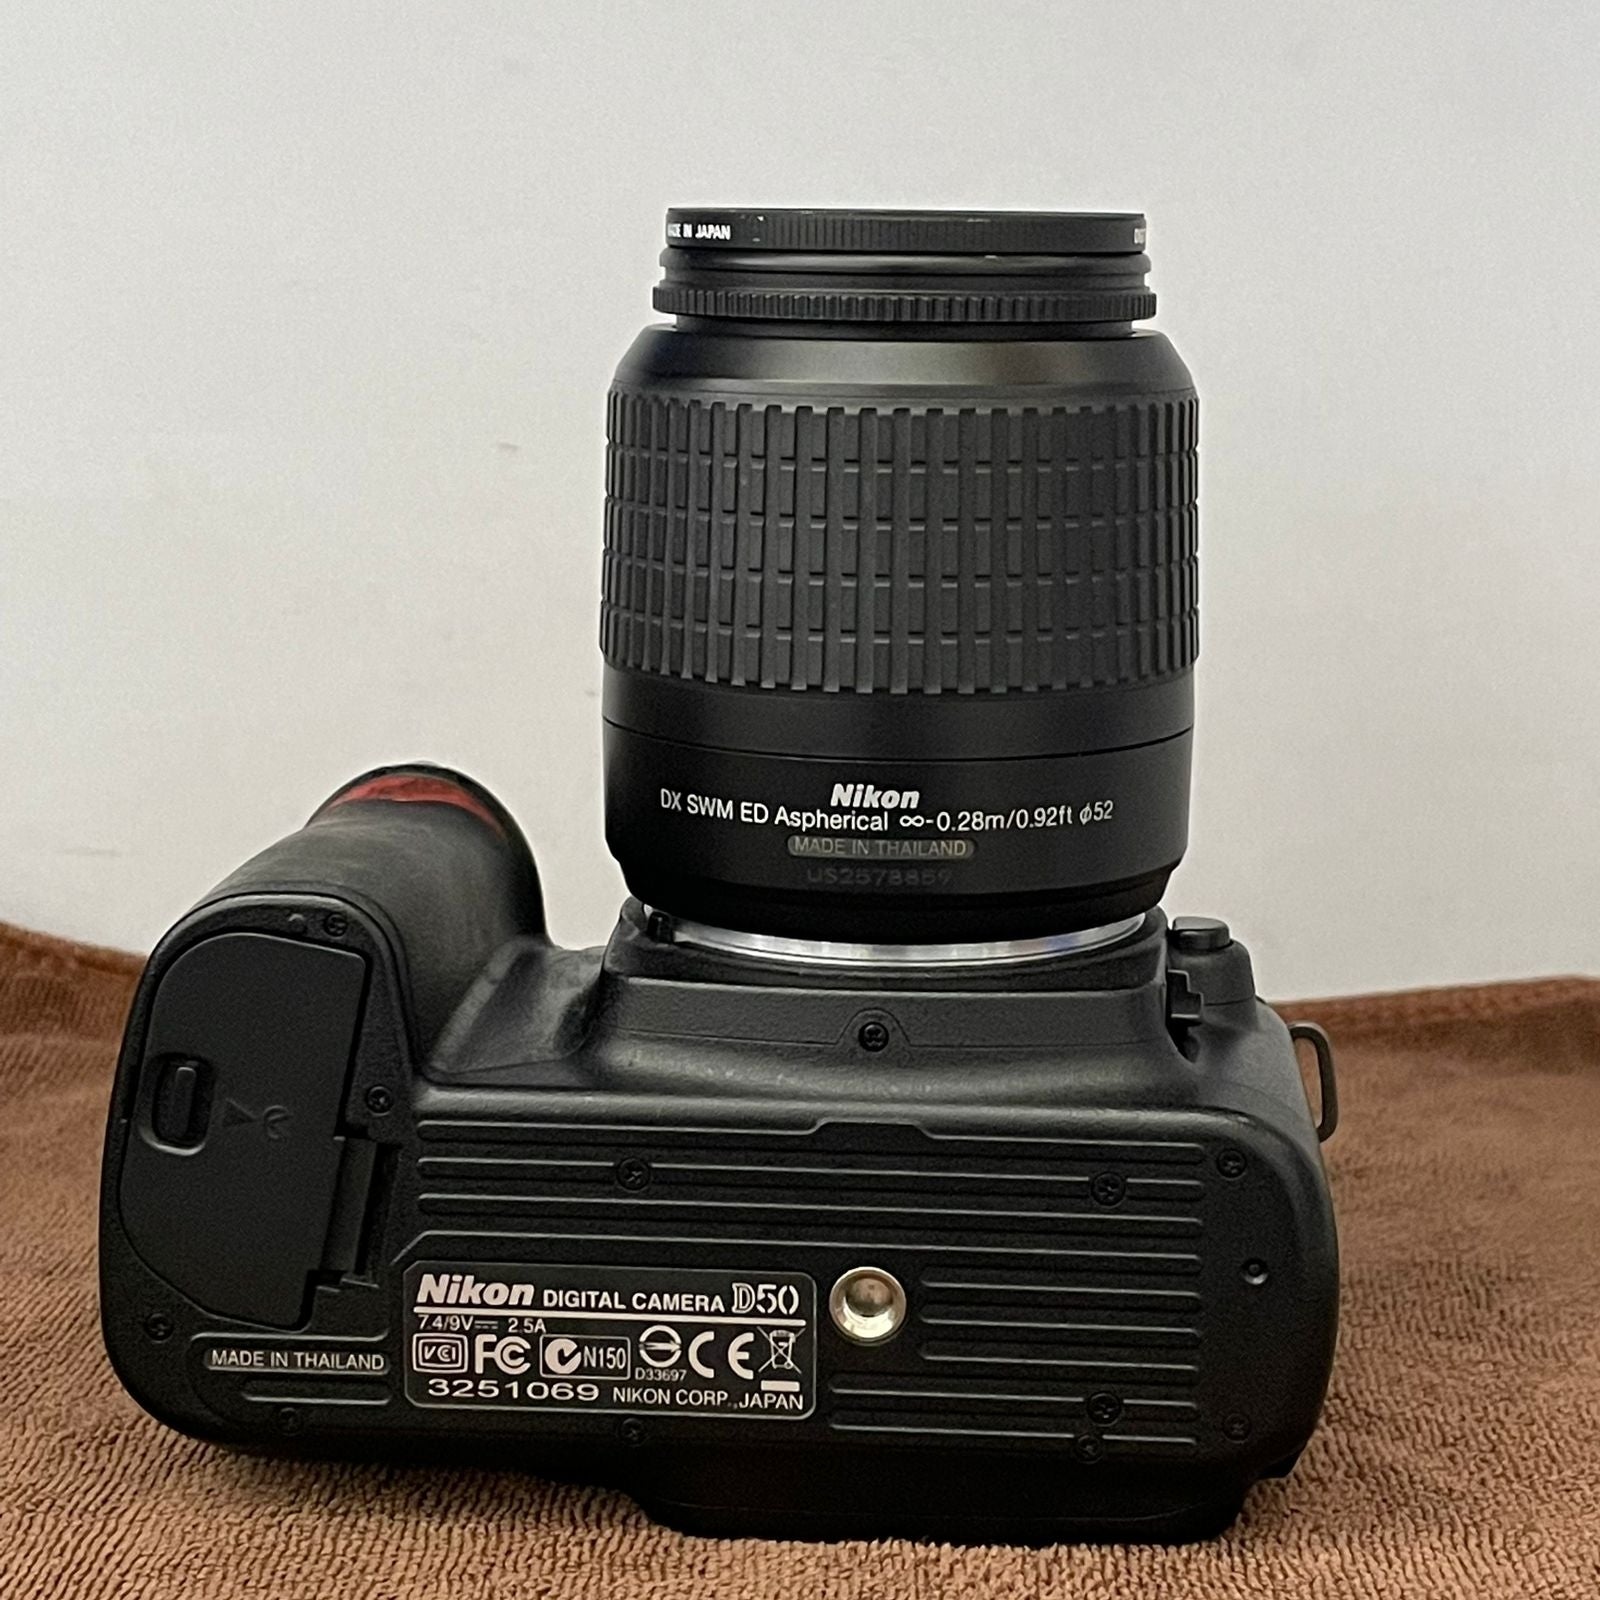 Used Nikon D50 Digital SLR Camera with Af-s 18-55mm Lens